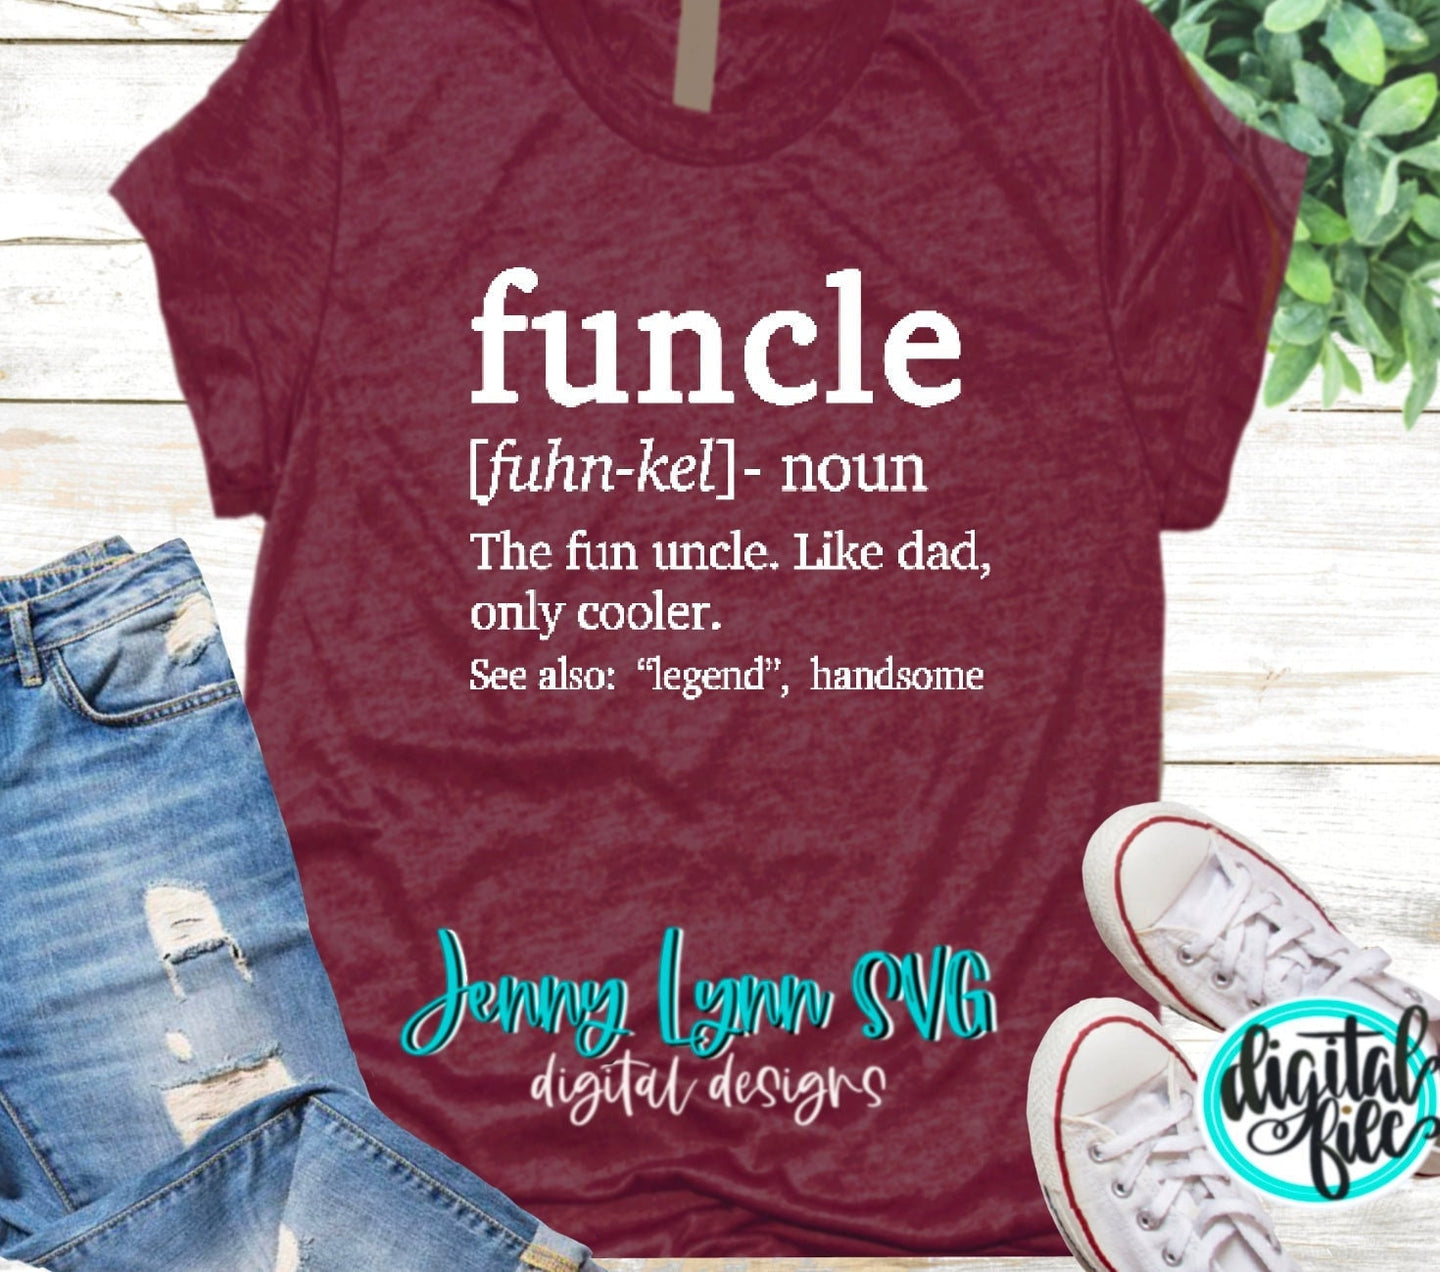 Aunt SVG Funtie SVG Auntie Shirt Digital Clipart Silhouette Download Digital Cricut Cut File Sublimation PNG Favorite Aunt